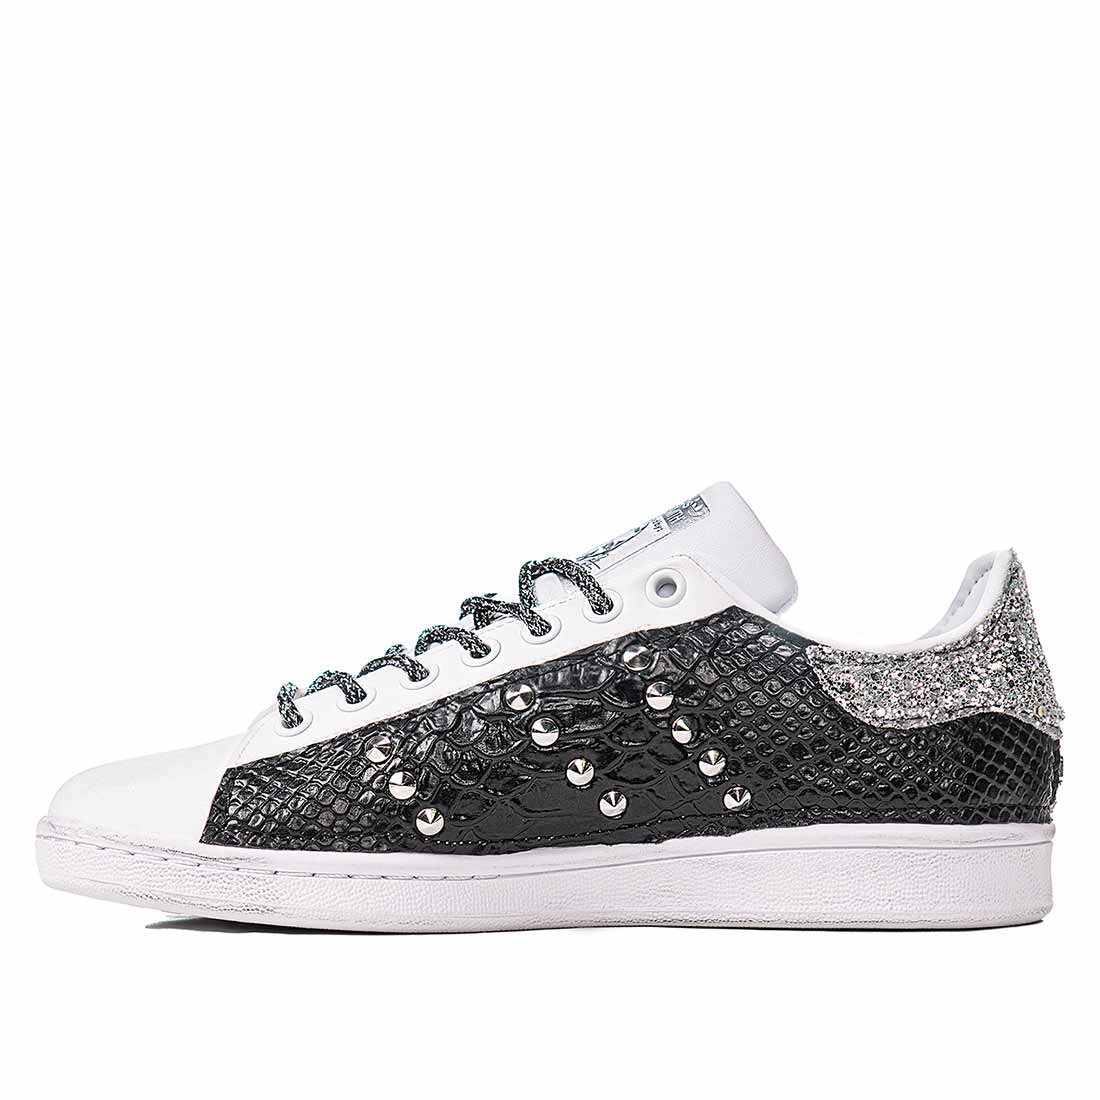 Adidas stan smith bianche con borchiette argento e glitter argento animalier pitonato lucido nero